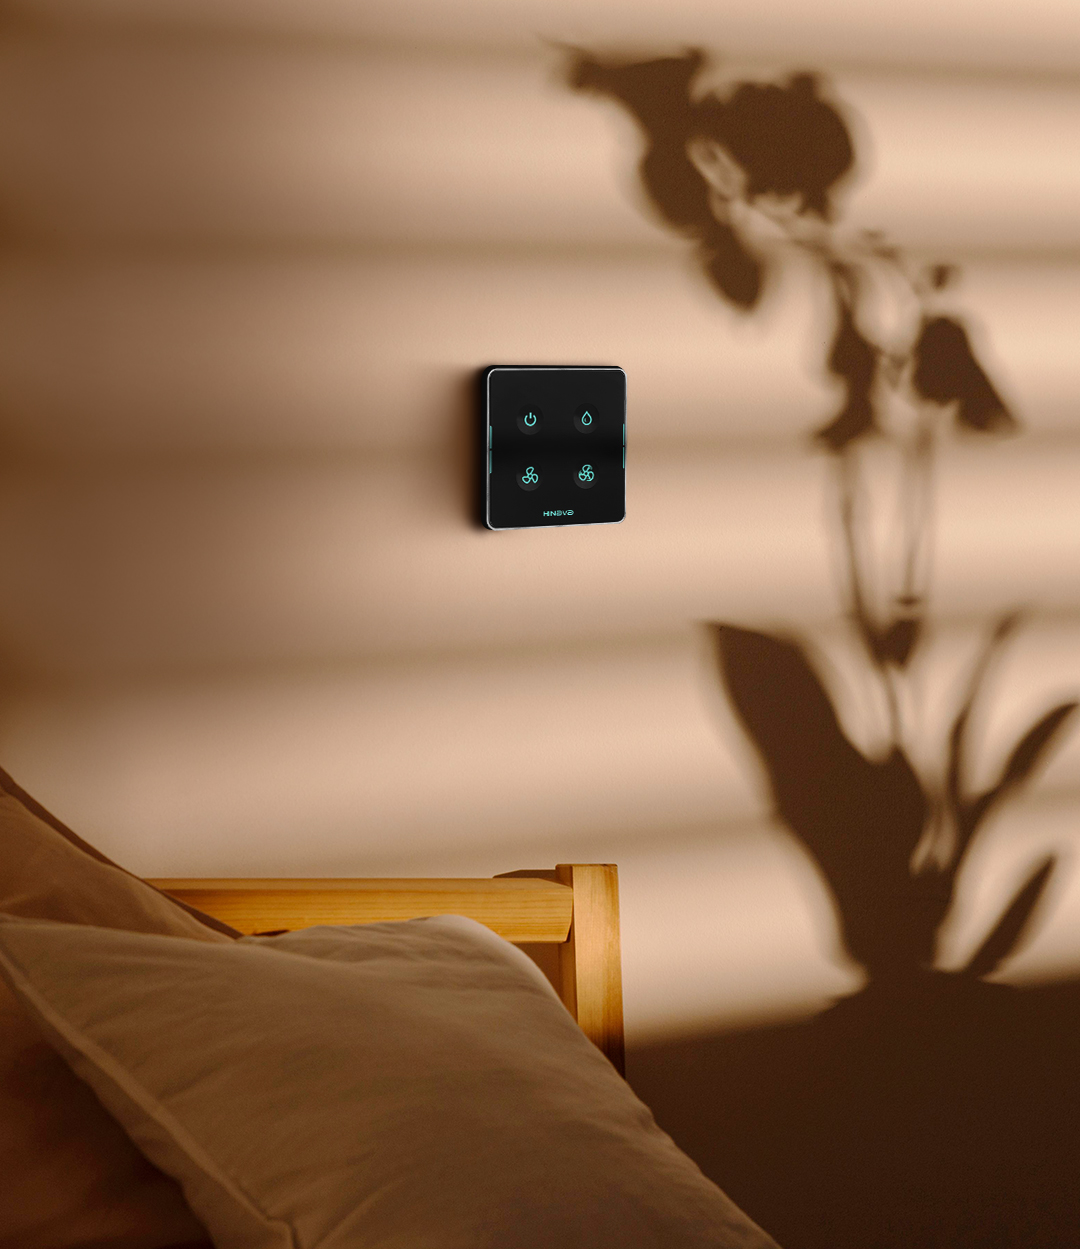 با نصب کلید هوشمند کولر آبی، کنترل کولر آبی از داخل خونه و خارج از خونه از روی گوشی موبایل به راحتی امکان پذیر هست.